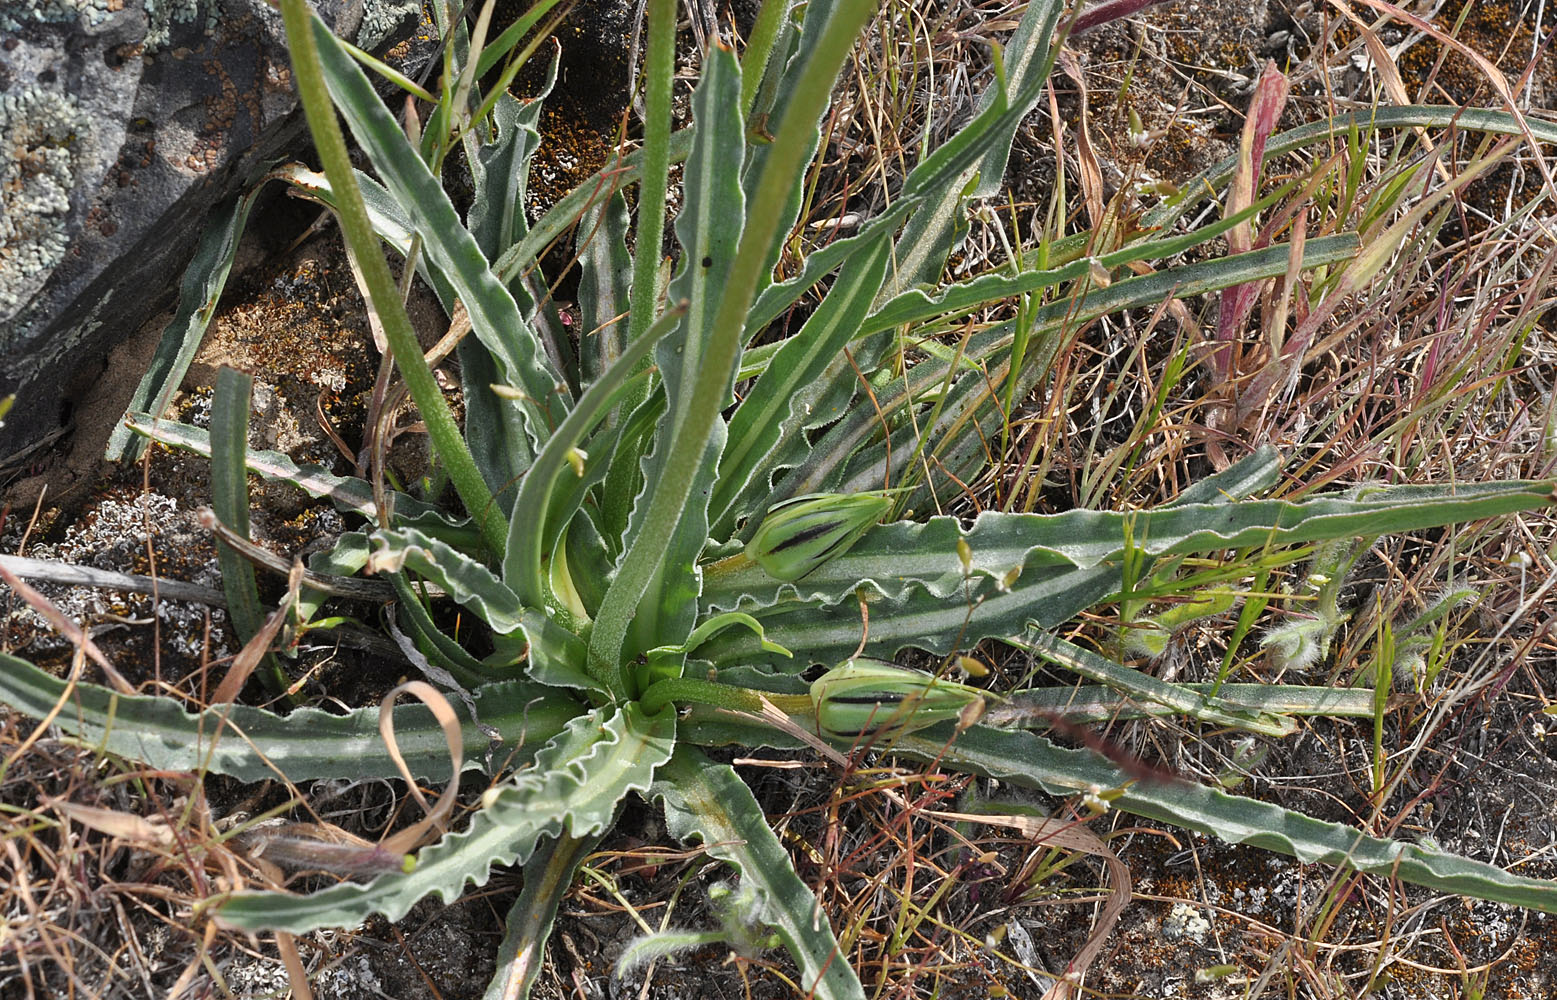 Flora of Eastern Washington Image: Nothocalais troximoides